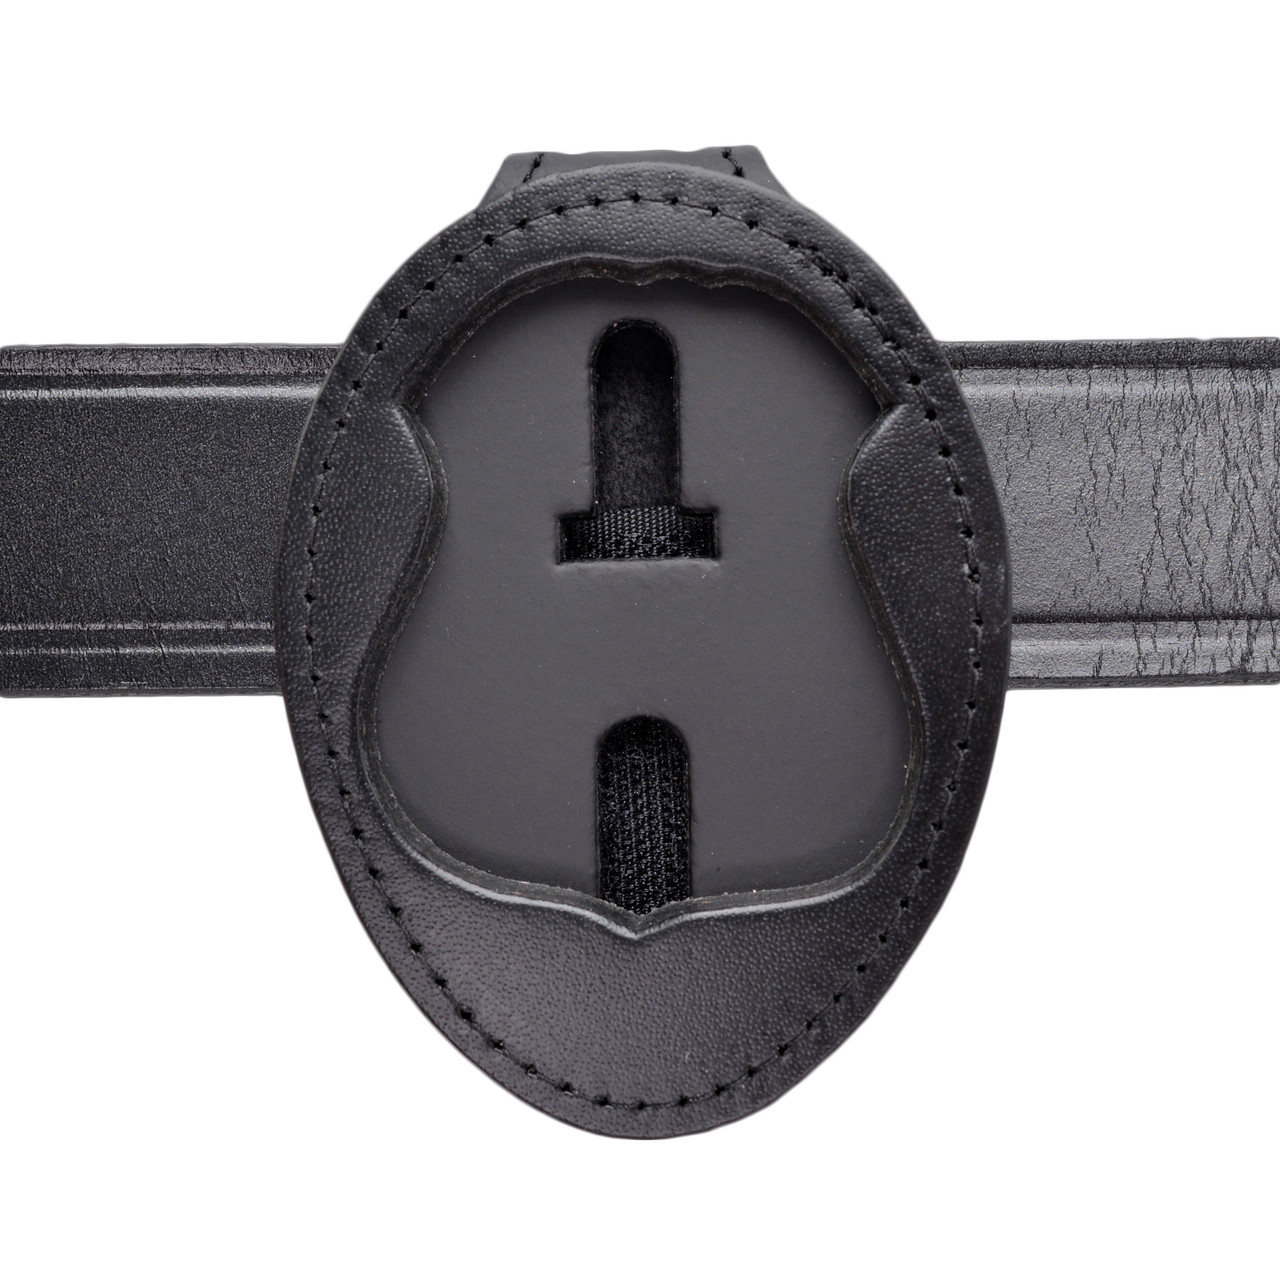 Leather Police Belt Clip Badge Holders - Police Badge Holder Belt